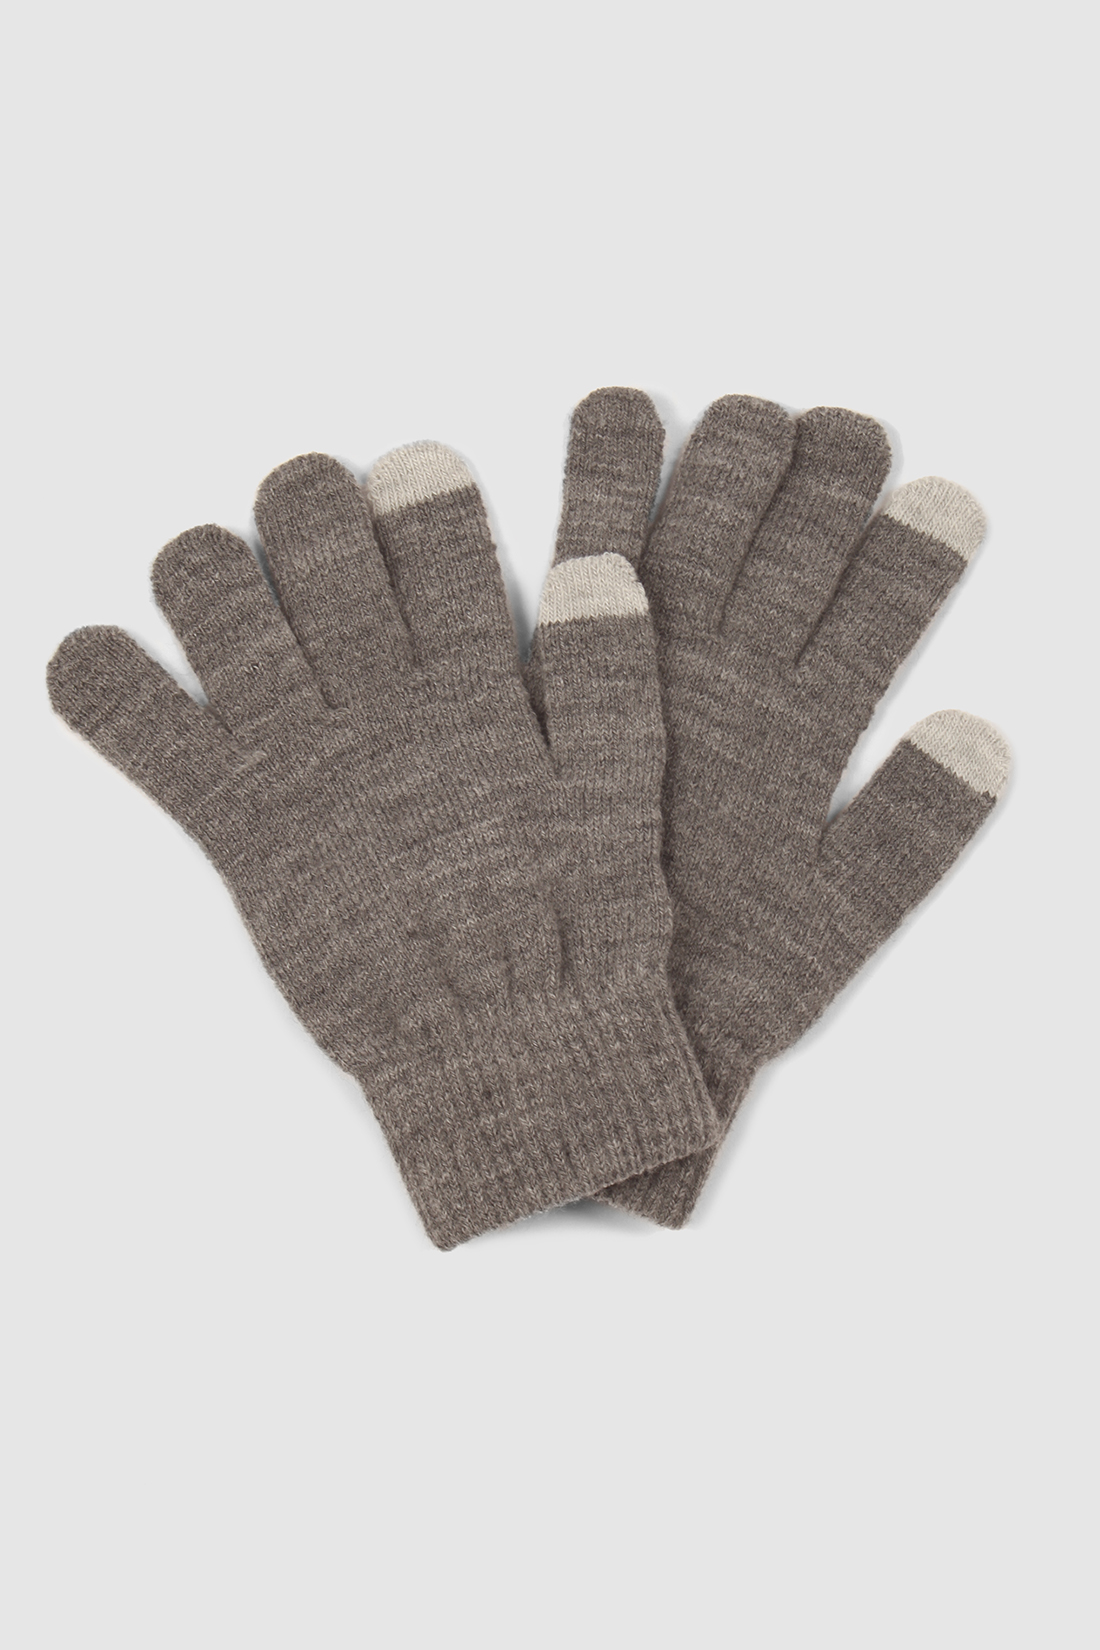 Перчатки (арт. baon B360513), размер Без/раз, цвет zircon melange#серый